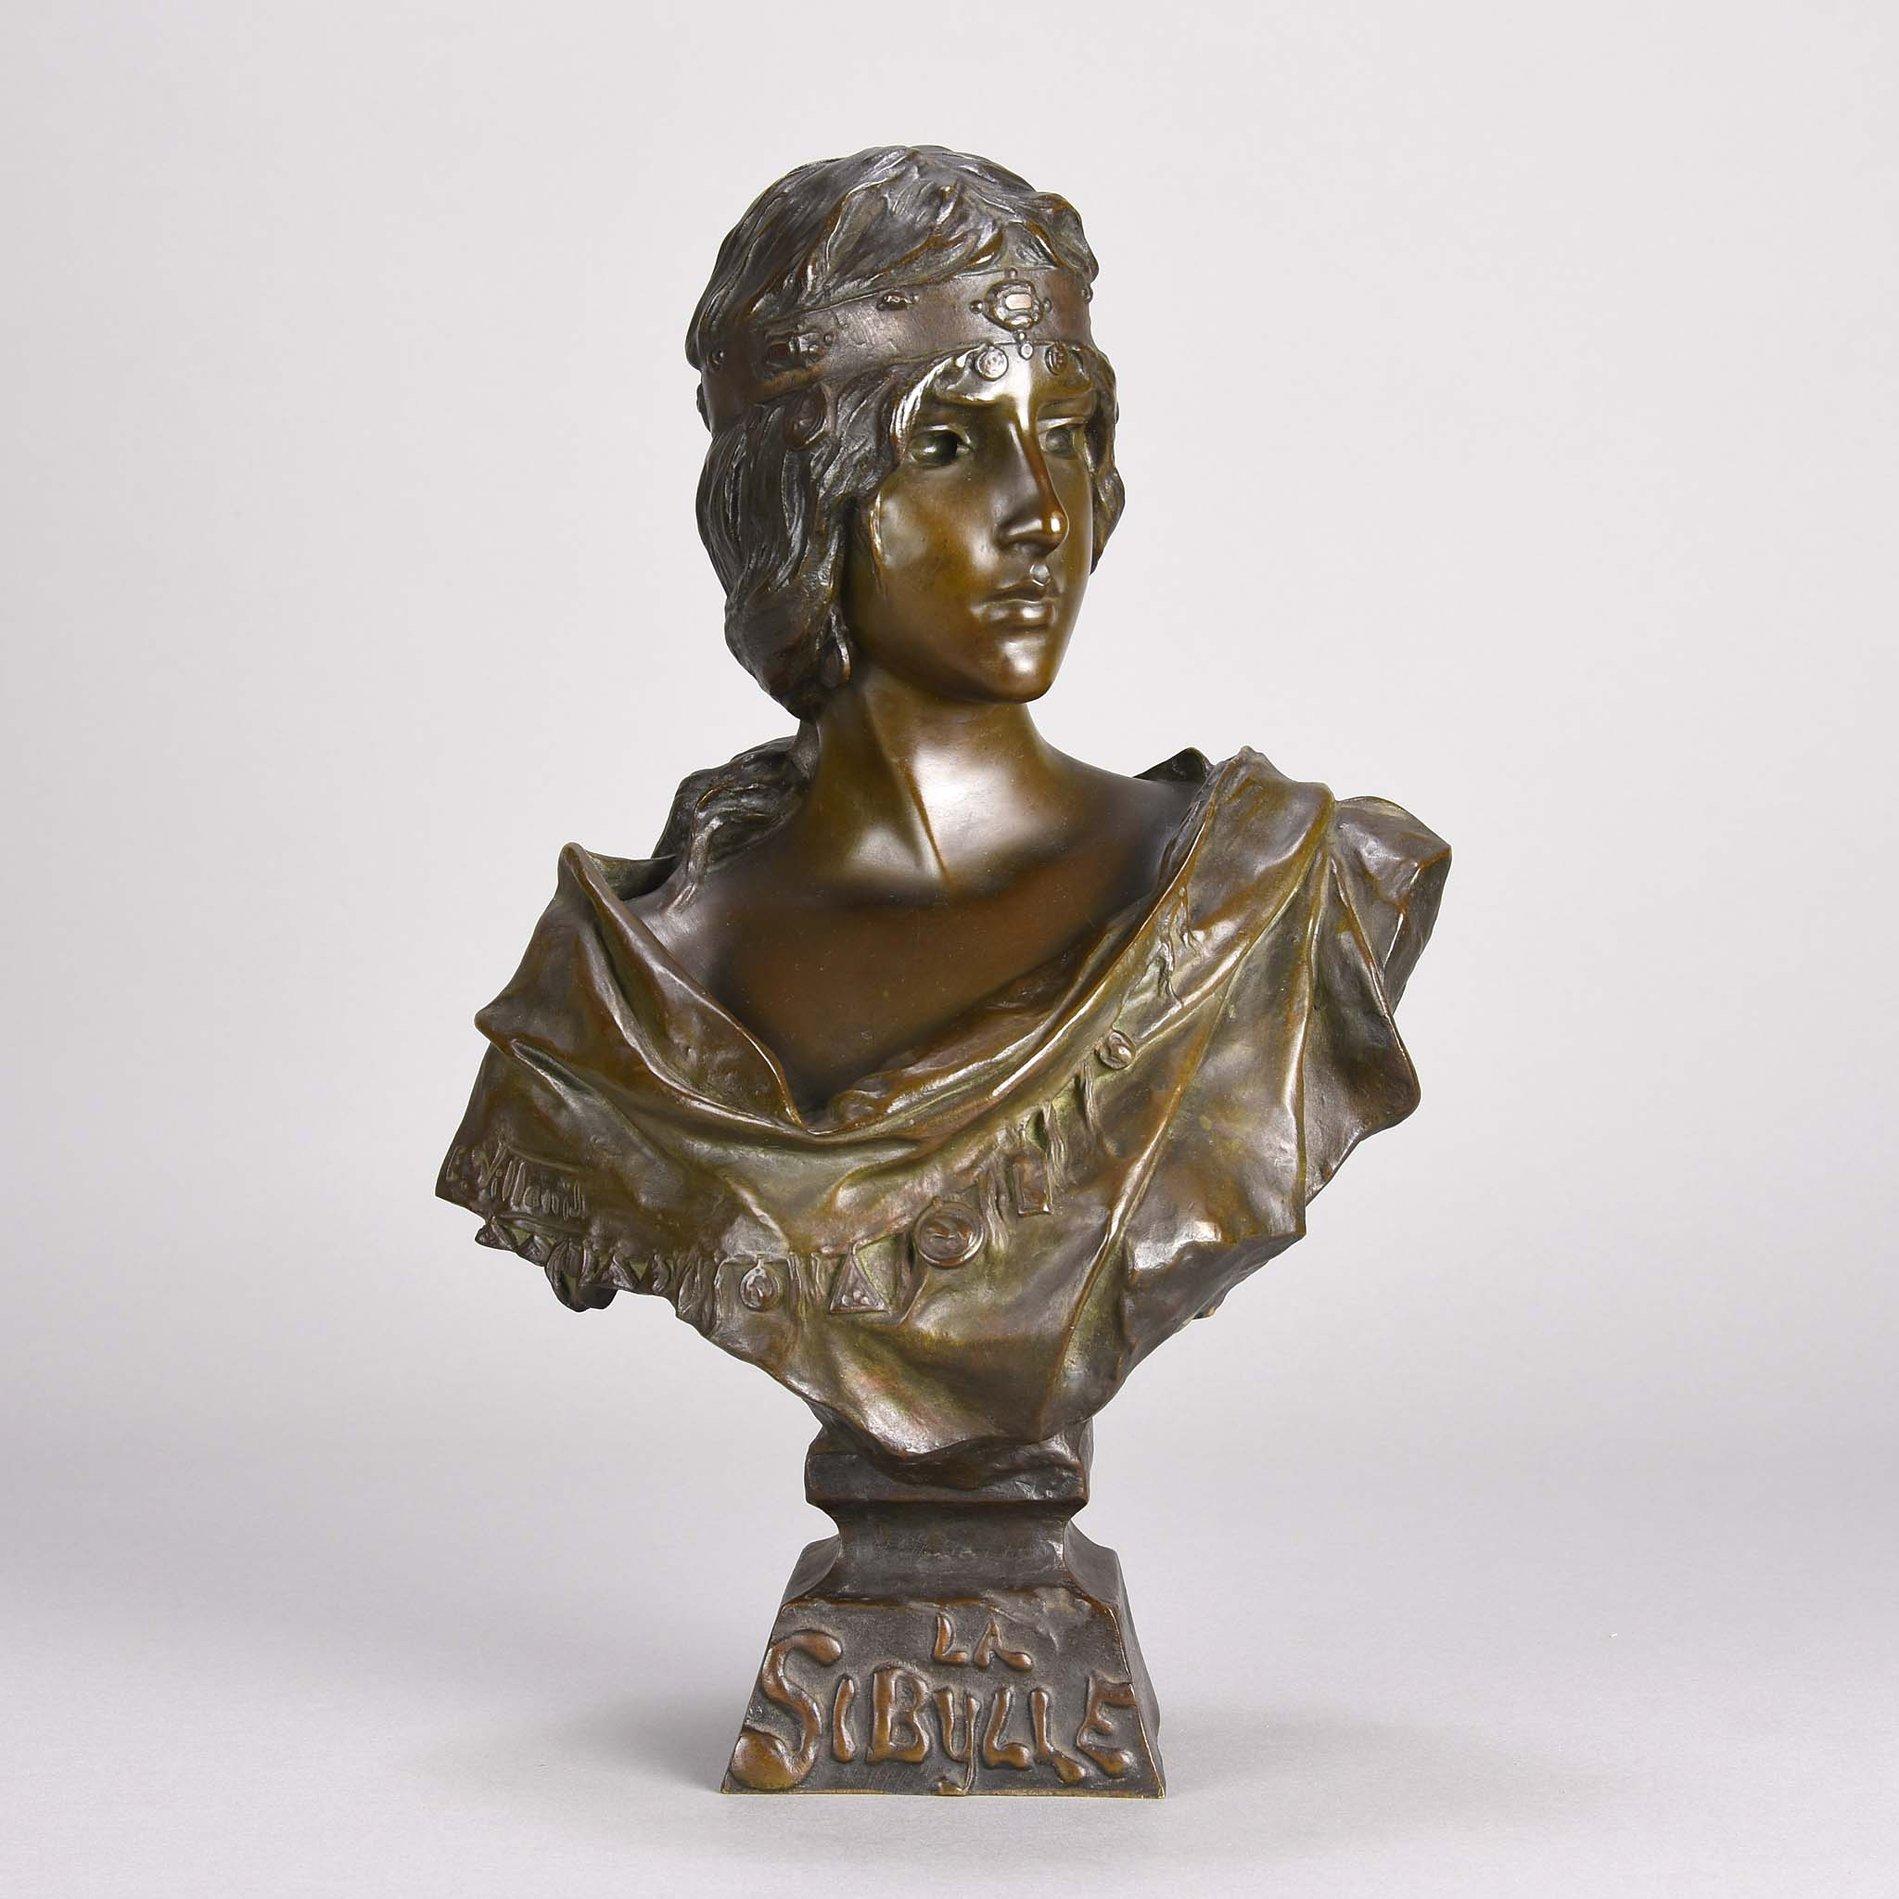 Magnifique buste en bronze Art Nouveau de la fin du XIXe siècle représentant une jeune femme classique portant une robe de tête décorée de médaillons. Il présente de beaux détails de surface finis à la main et une riche patine brune et verte. Titré,